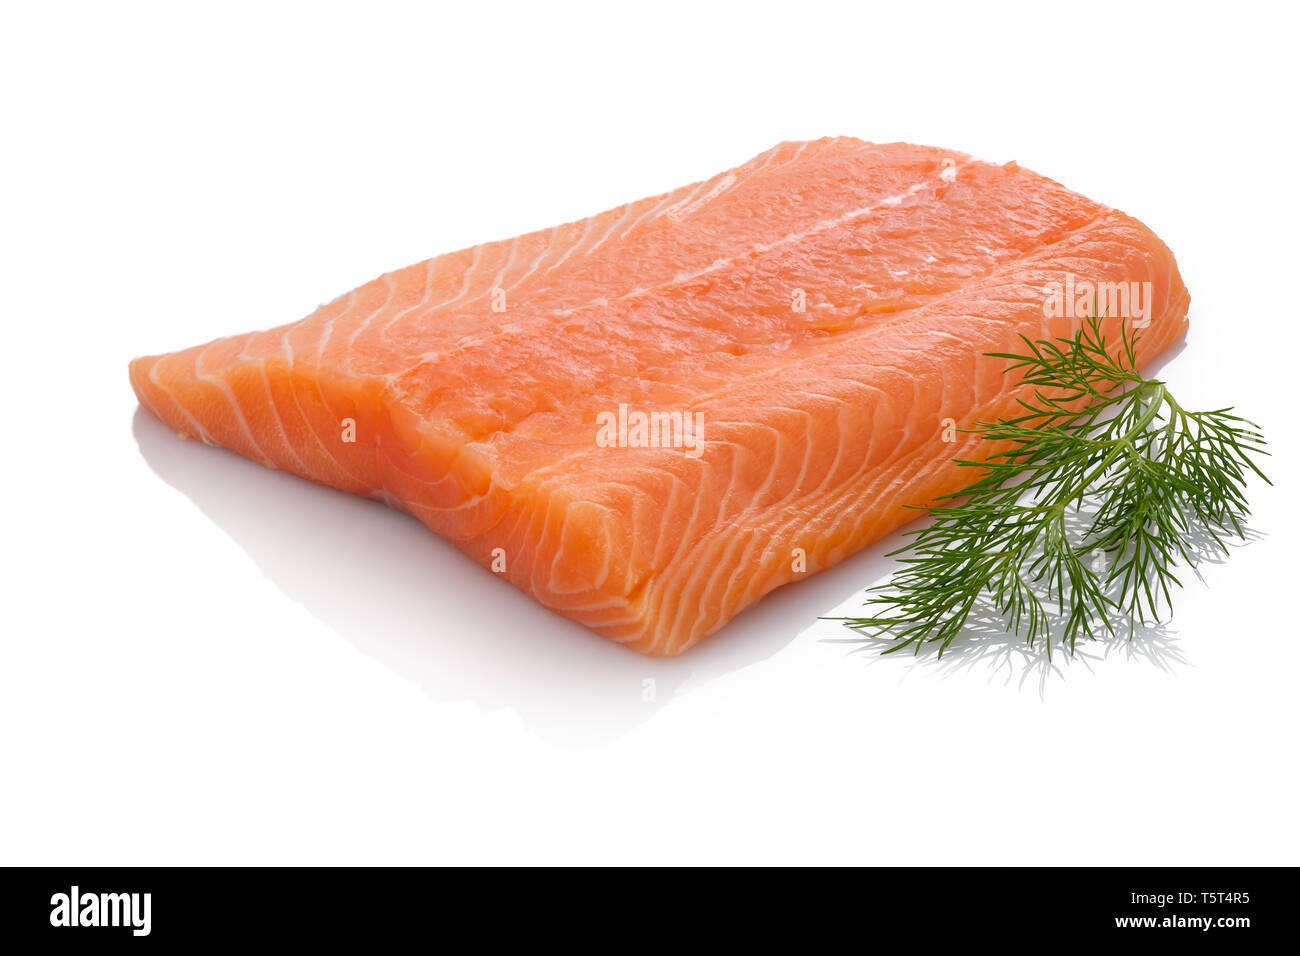 Raw orange Lachs Fisch Filet mit grünen Dill weiß isoliert Stockfoto